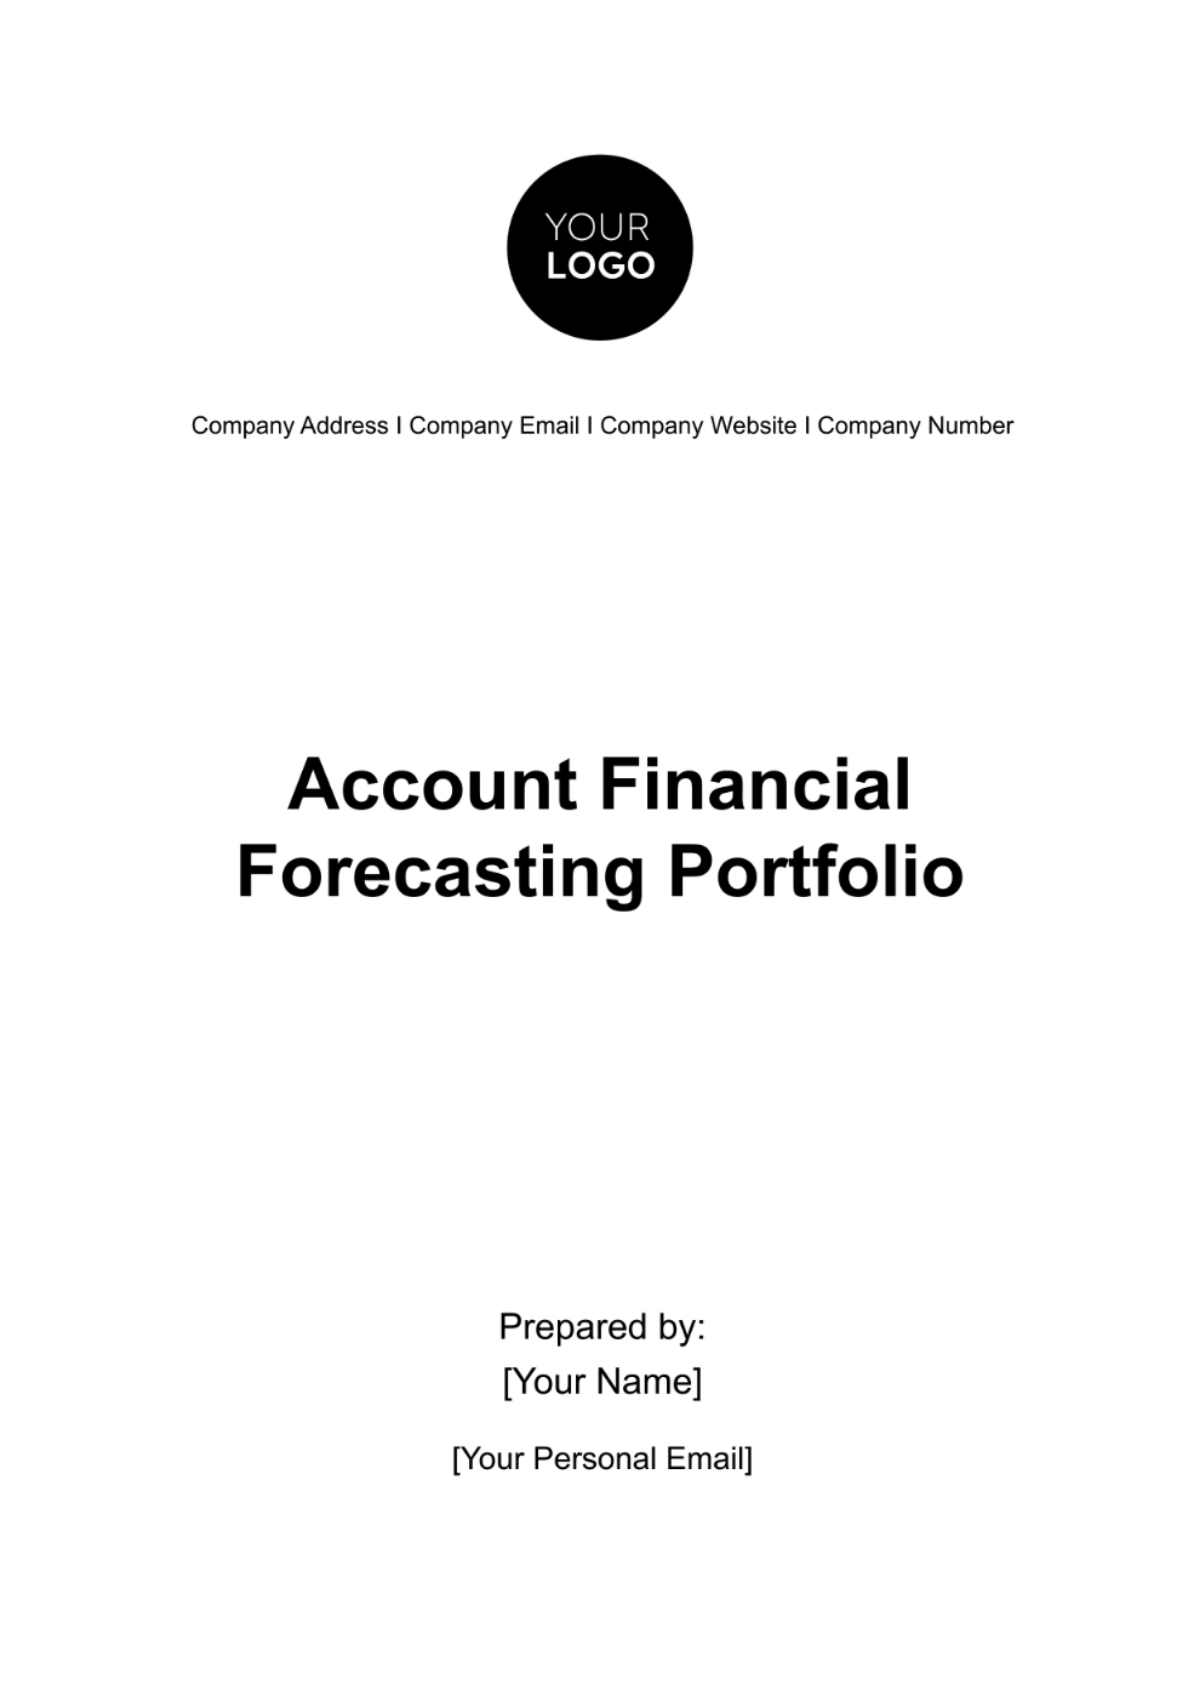 Account Financial Forecasting Portfolio Template